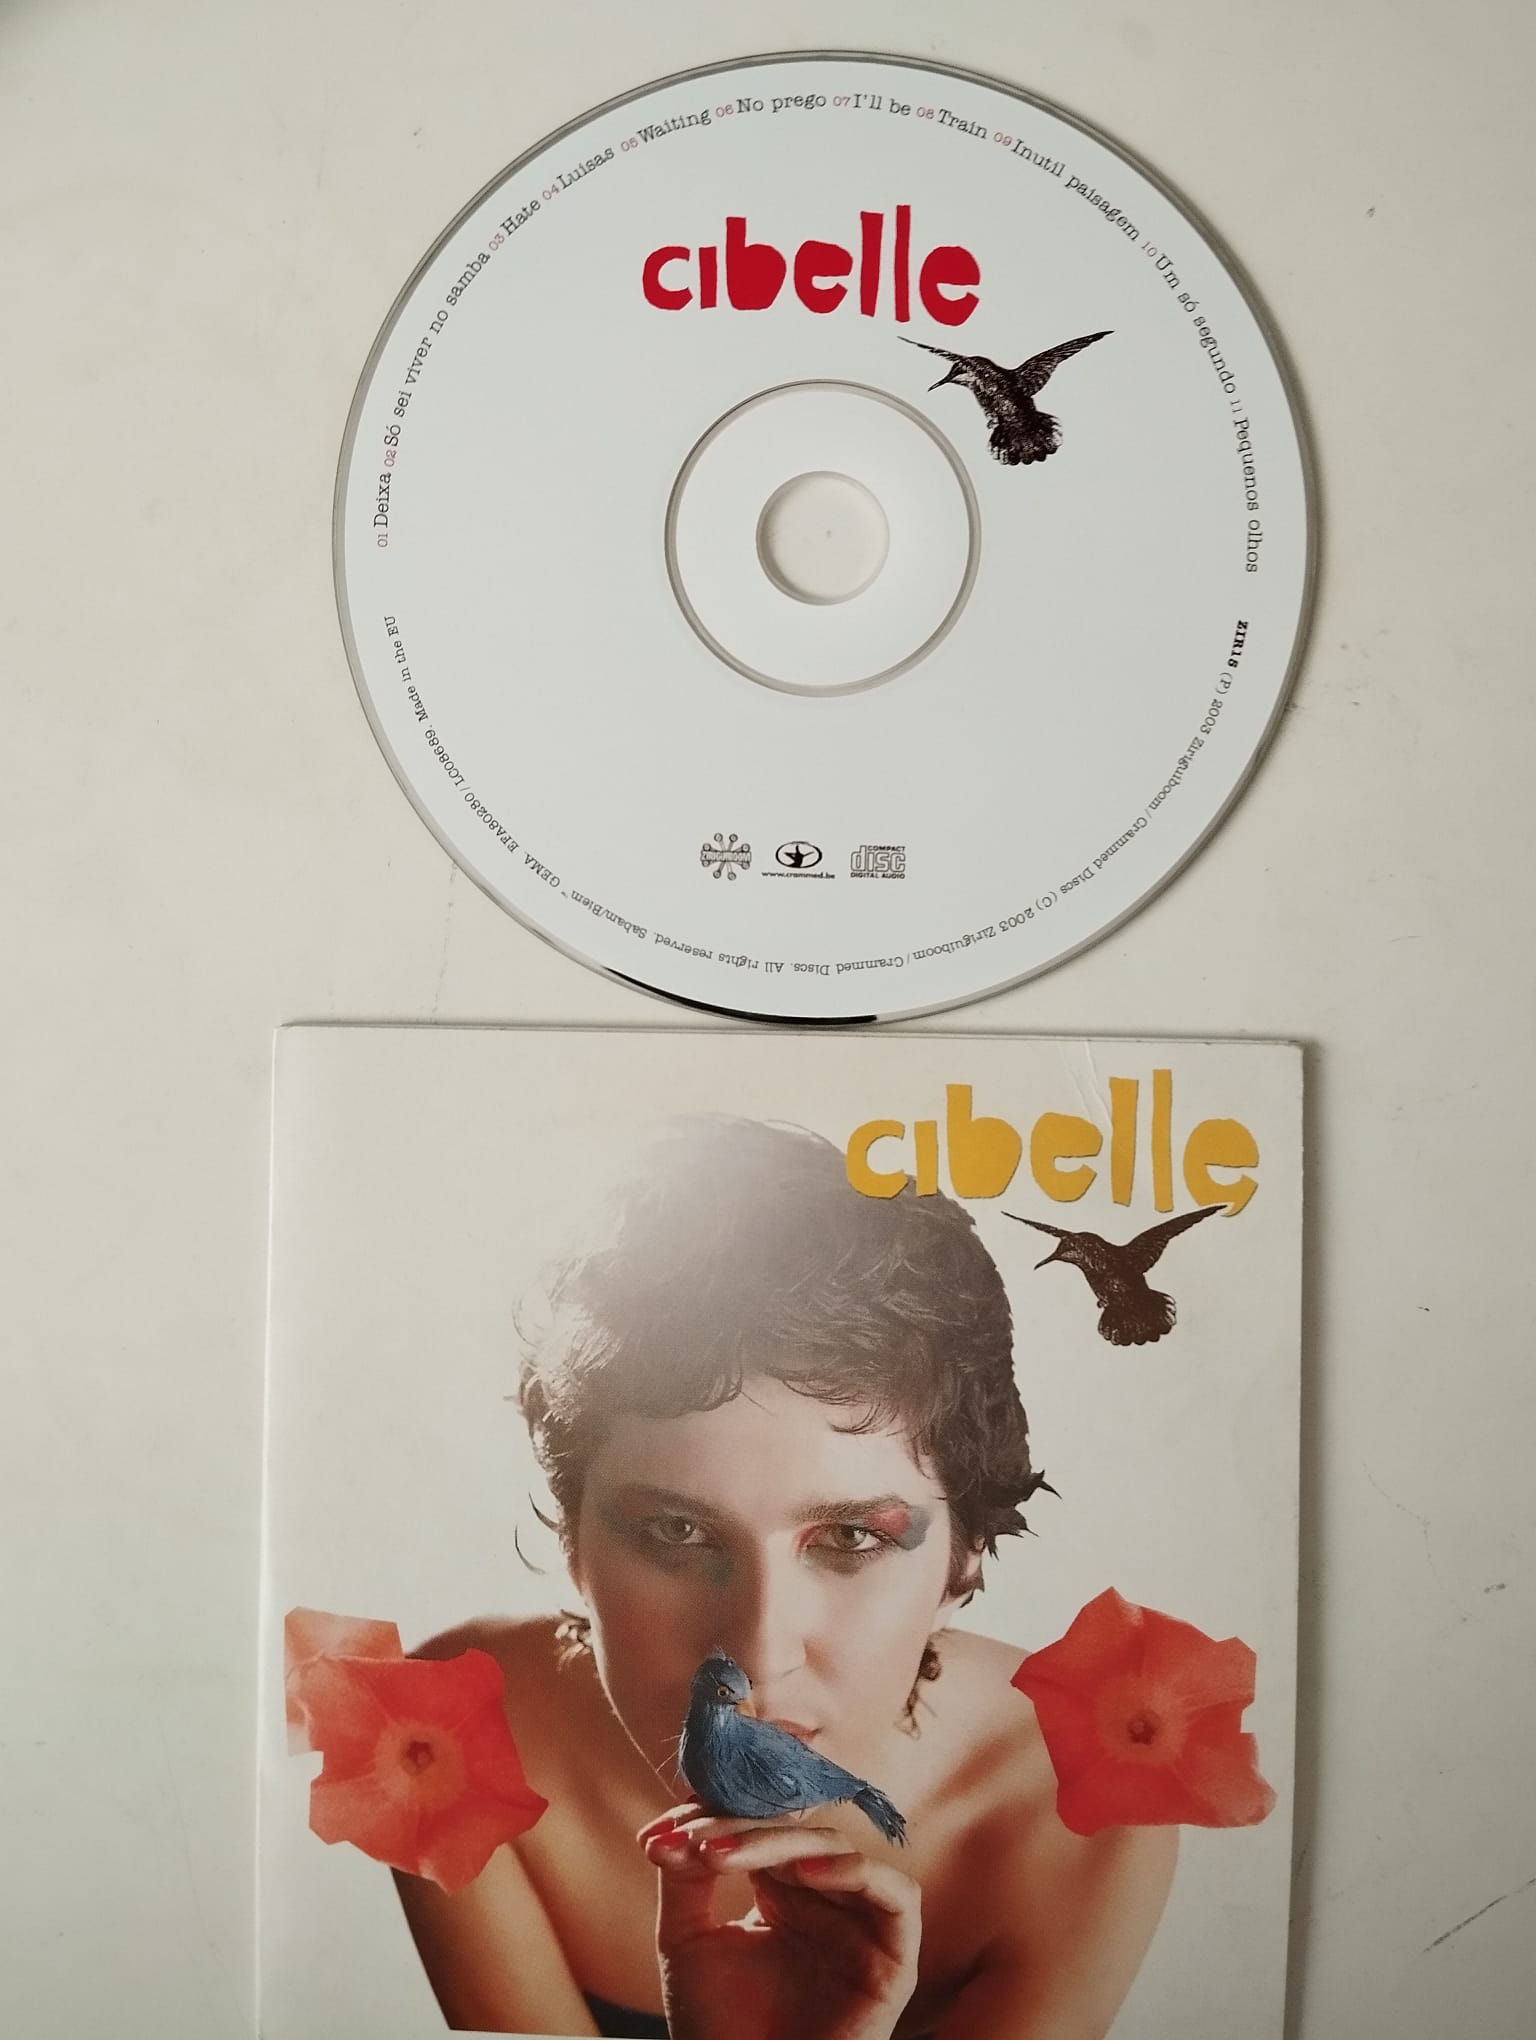 Cibelle -  2003 Avrupa  Basım - 2. El CD, Promo, Cardboard Sleeve